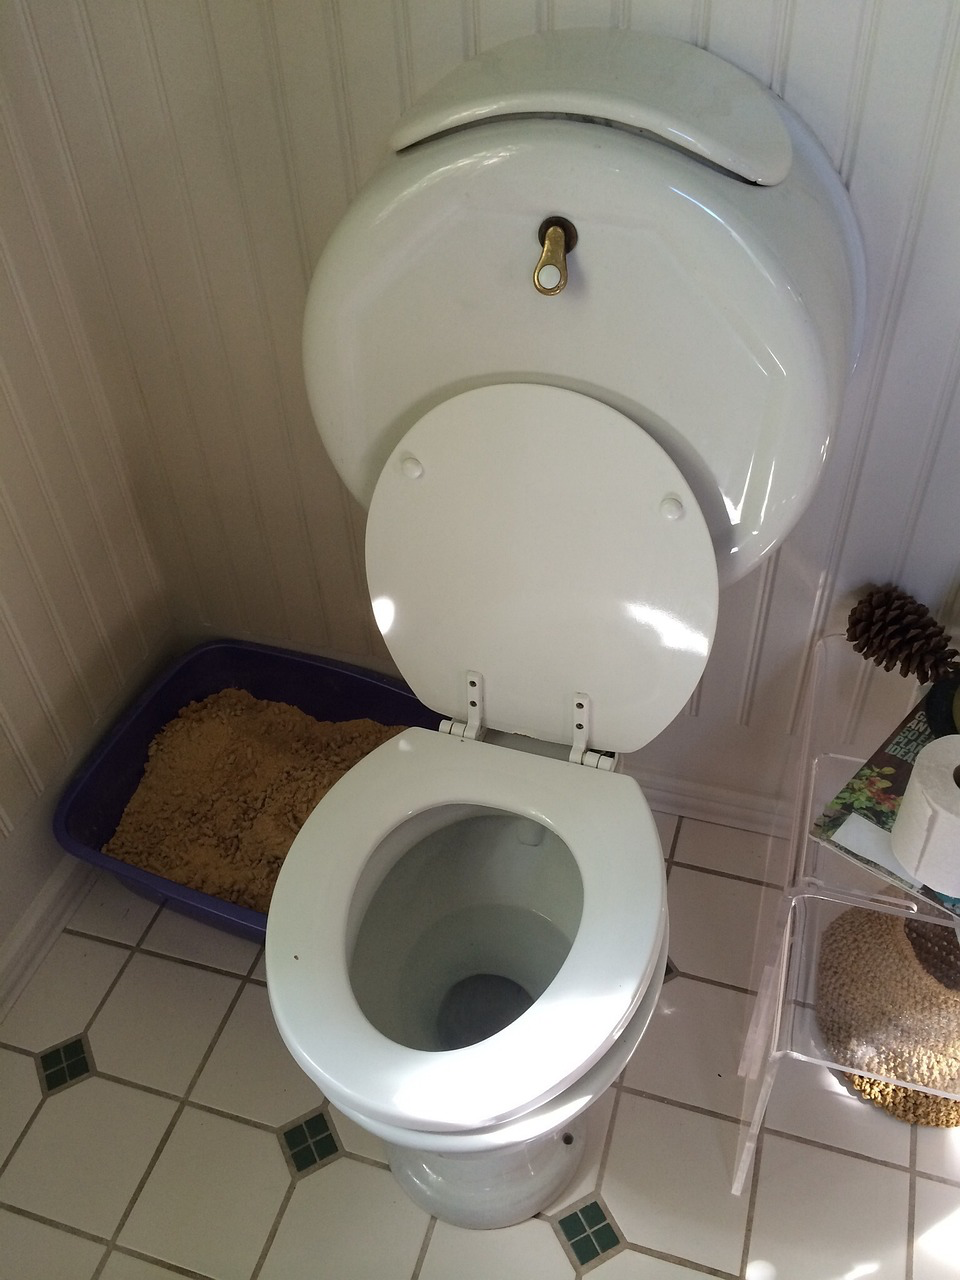 Eine Toilette mit offenem Deckel. Wenn sich im Toilettenwasser schwarze WÃ¼rmer tummeln, sollte die Toilette zunÃ¤chst grÃ¼ndlich gereinigt werden.